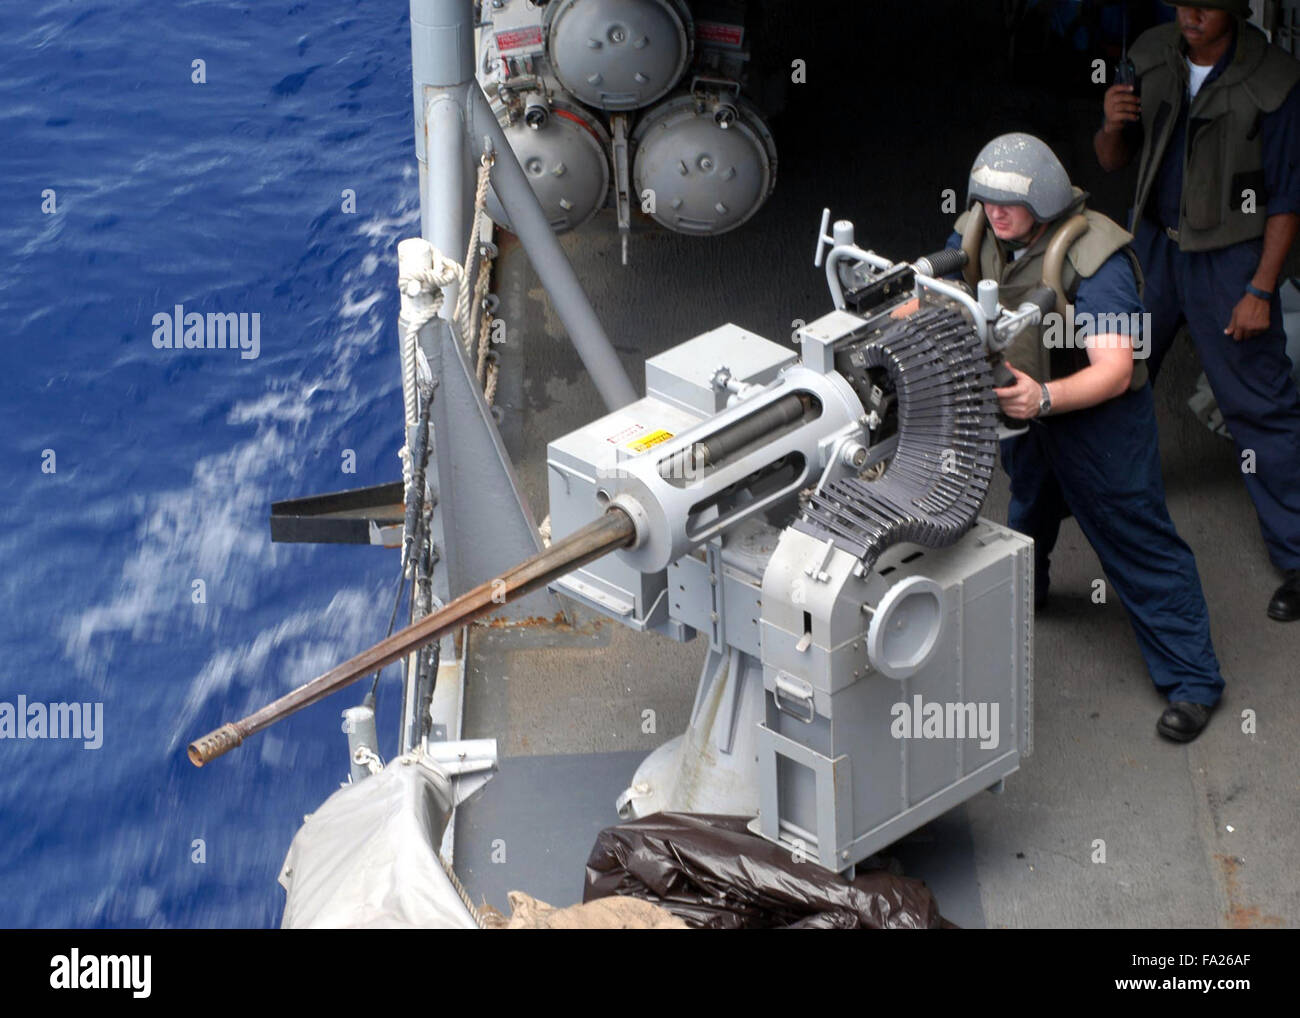 Operations Specialist verteidigt das Schiff mit einem Mark 38 .25 mm Maschinengewehr während einer Übung kleines Boot an Bord der Lenkflugkörper Fregatte USS Ingraham Stockfoto